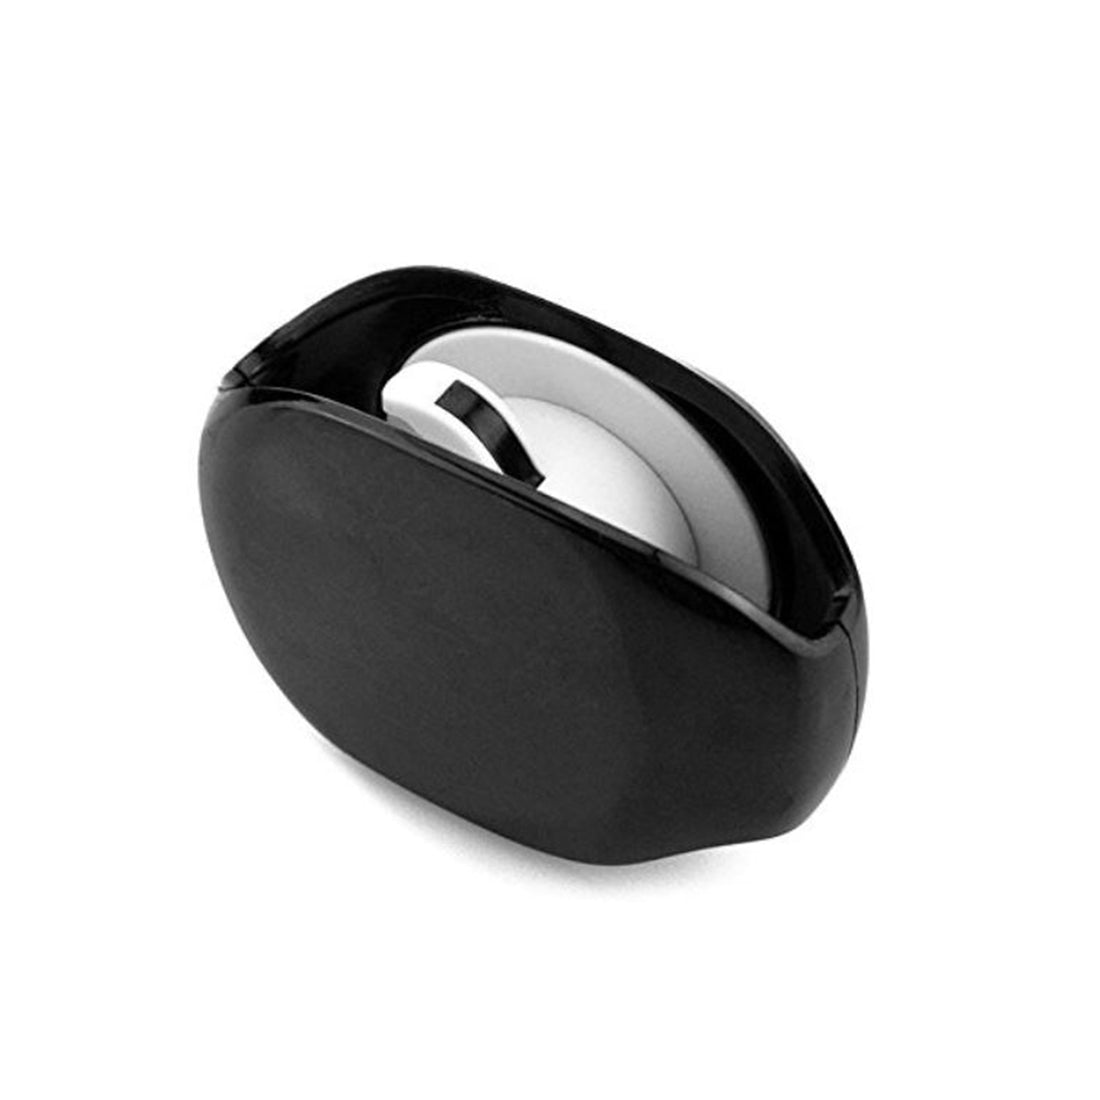 Headphone Cord Keeper - Black, Blue, Red or White